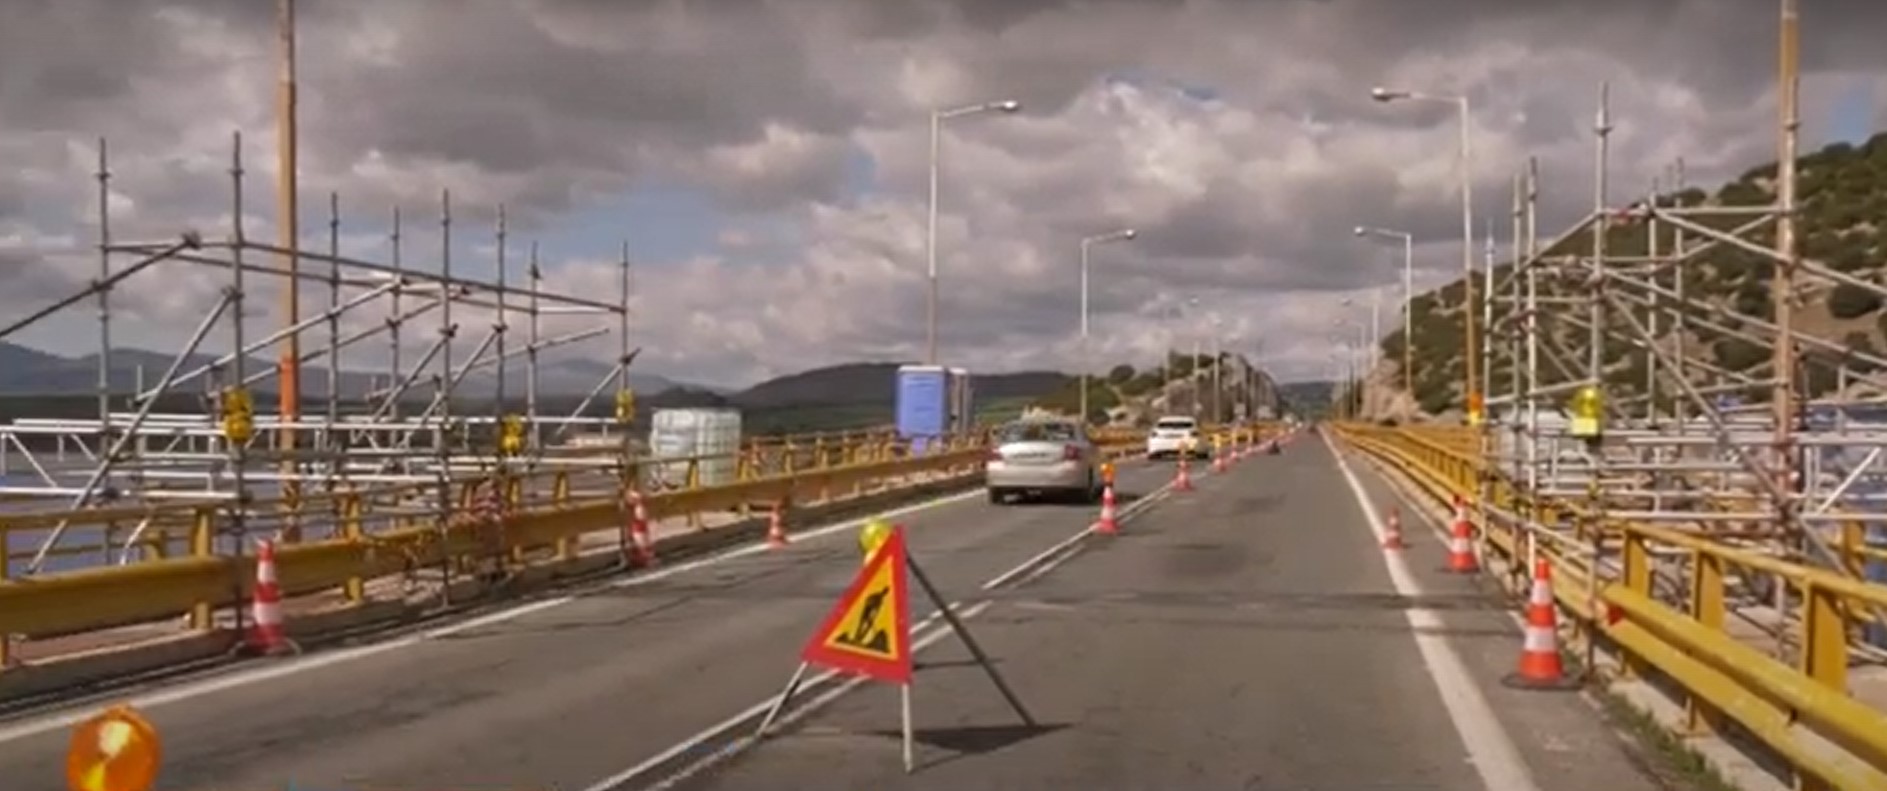 Γέφυρα Σερβίων: Κλειστή για όλα τα οχήματα και τους πεζούς για τουλάχιστον ένα μήνα – Οι κυκλοφοριακές ρυθμίσεις